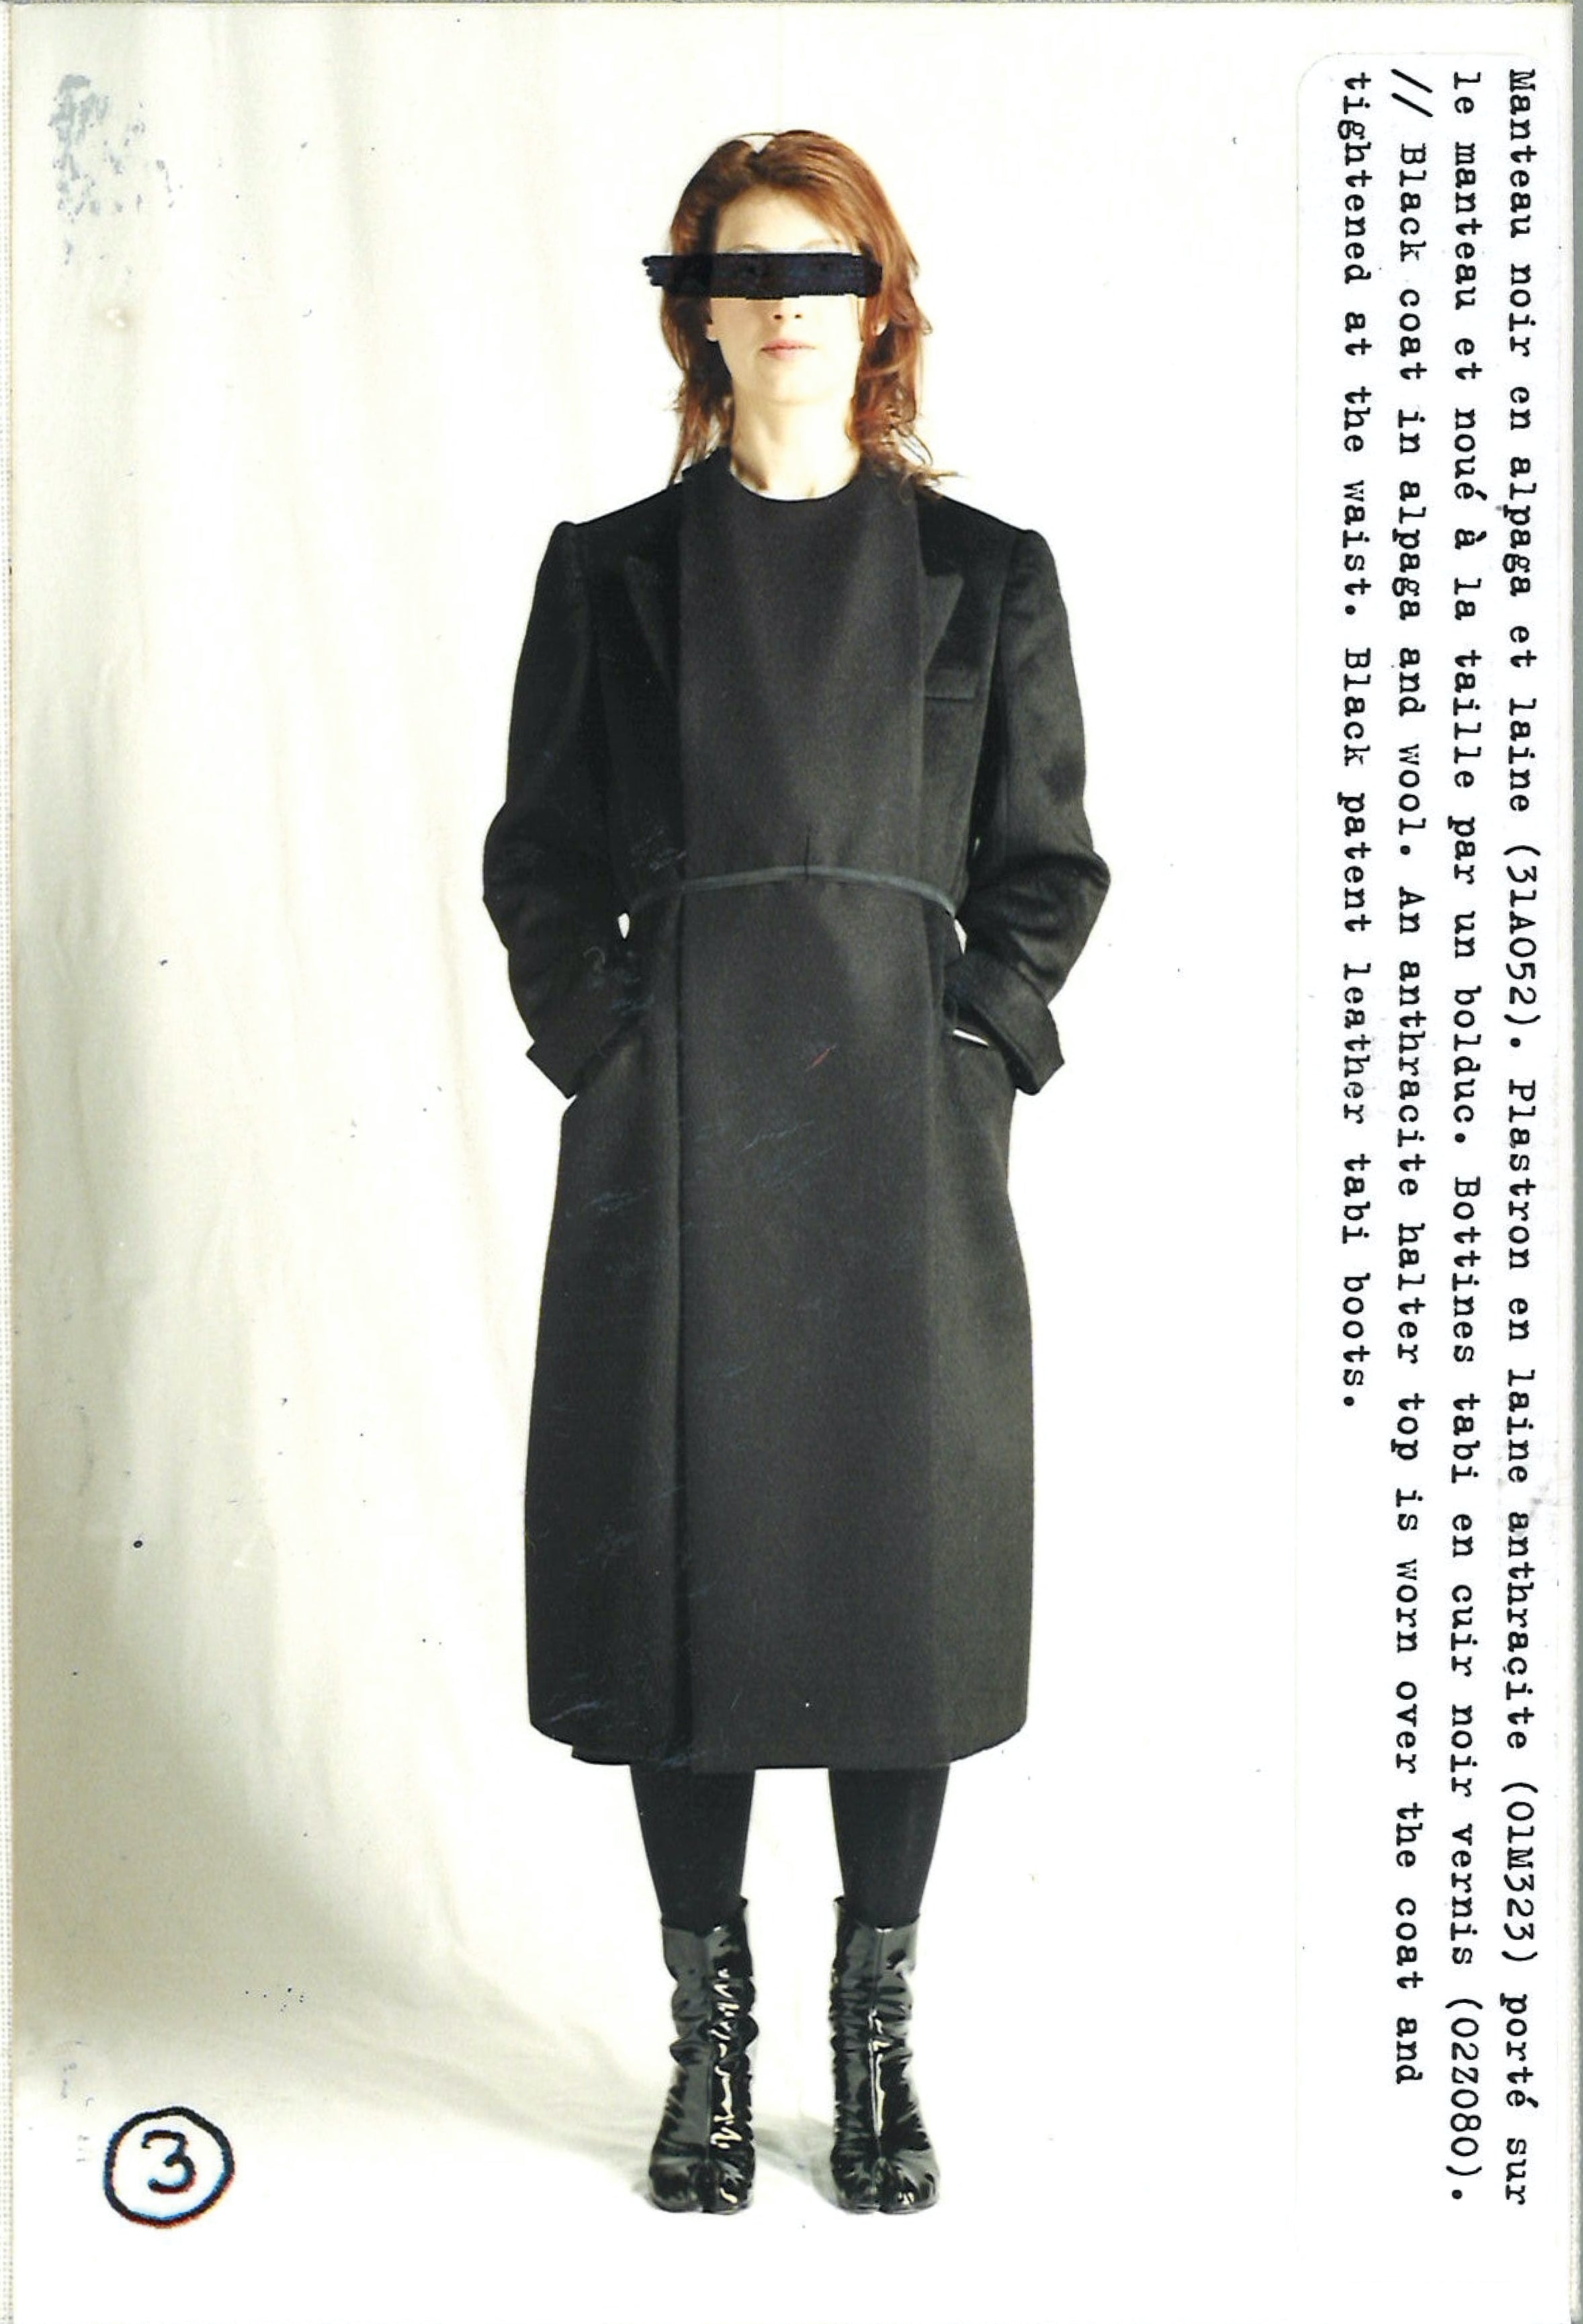 Maison Martin Margiela Lookbook
Womenswear Collection Autumn/Winter 2002-03